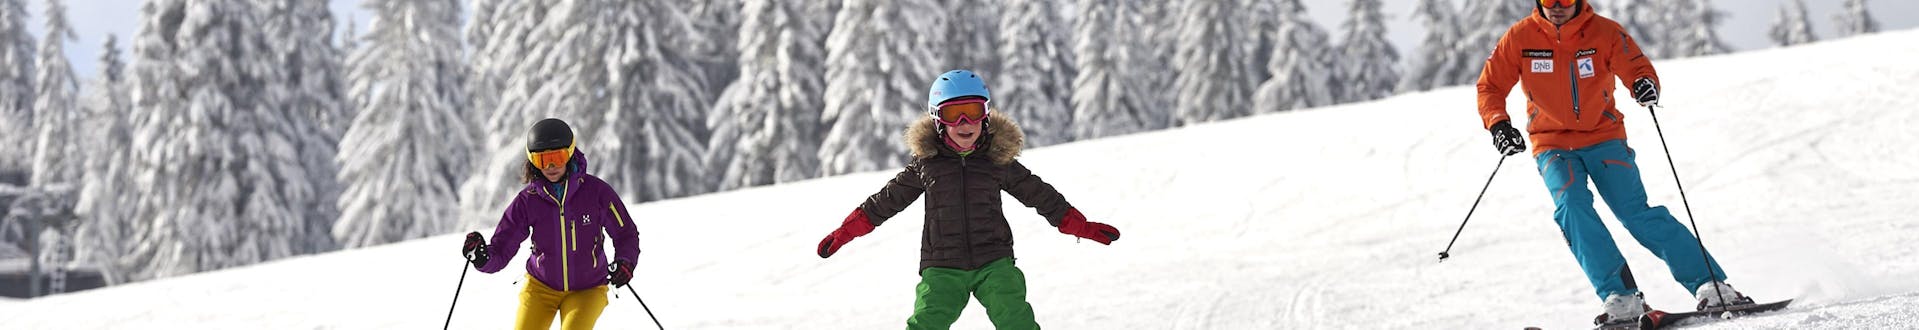 Eine Familie bestehend aus zwei Erwachsenen und einem Kind beim Skifahren am Großen Arber, einem beliebten deutschen Skigebiet in dem man bei einer der örtlichen Skischulen einen Skikurs buchen kann.